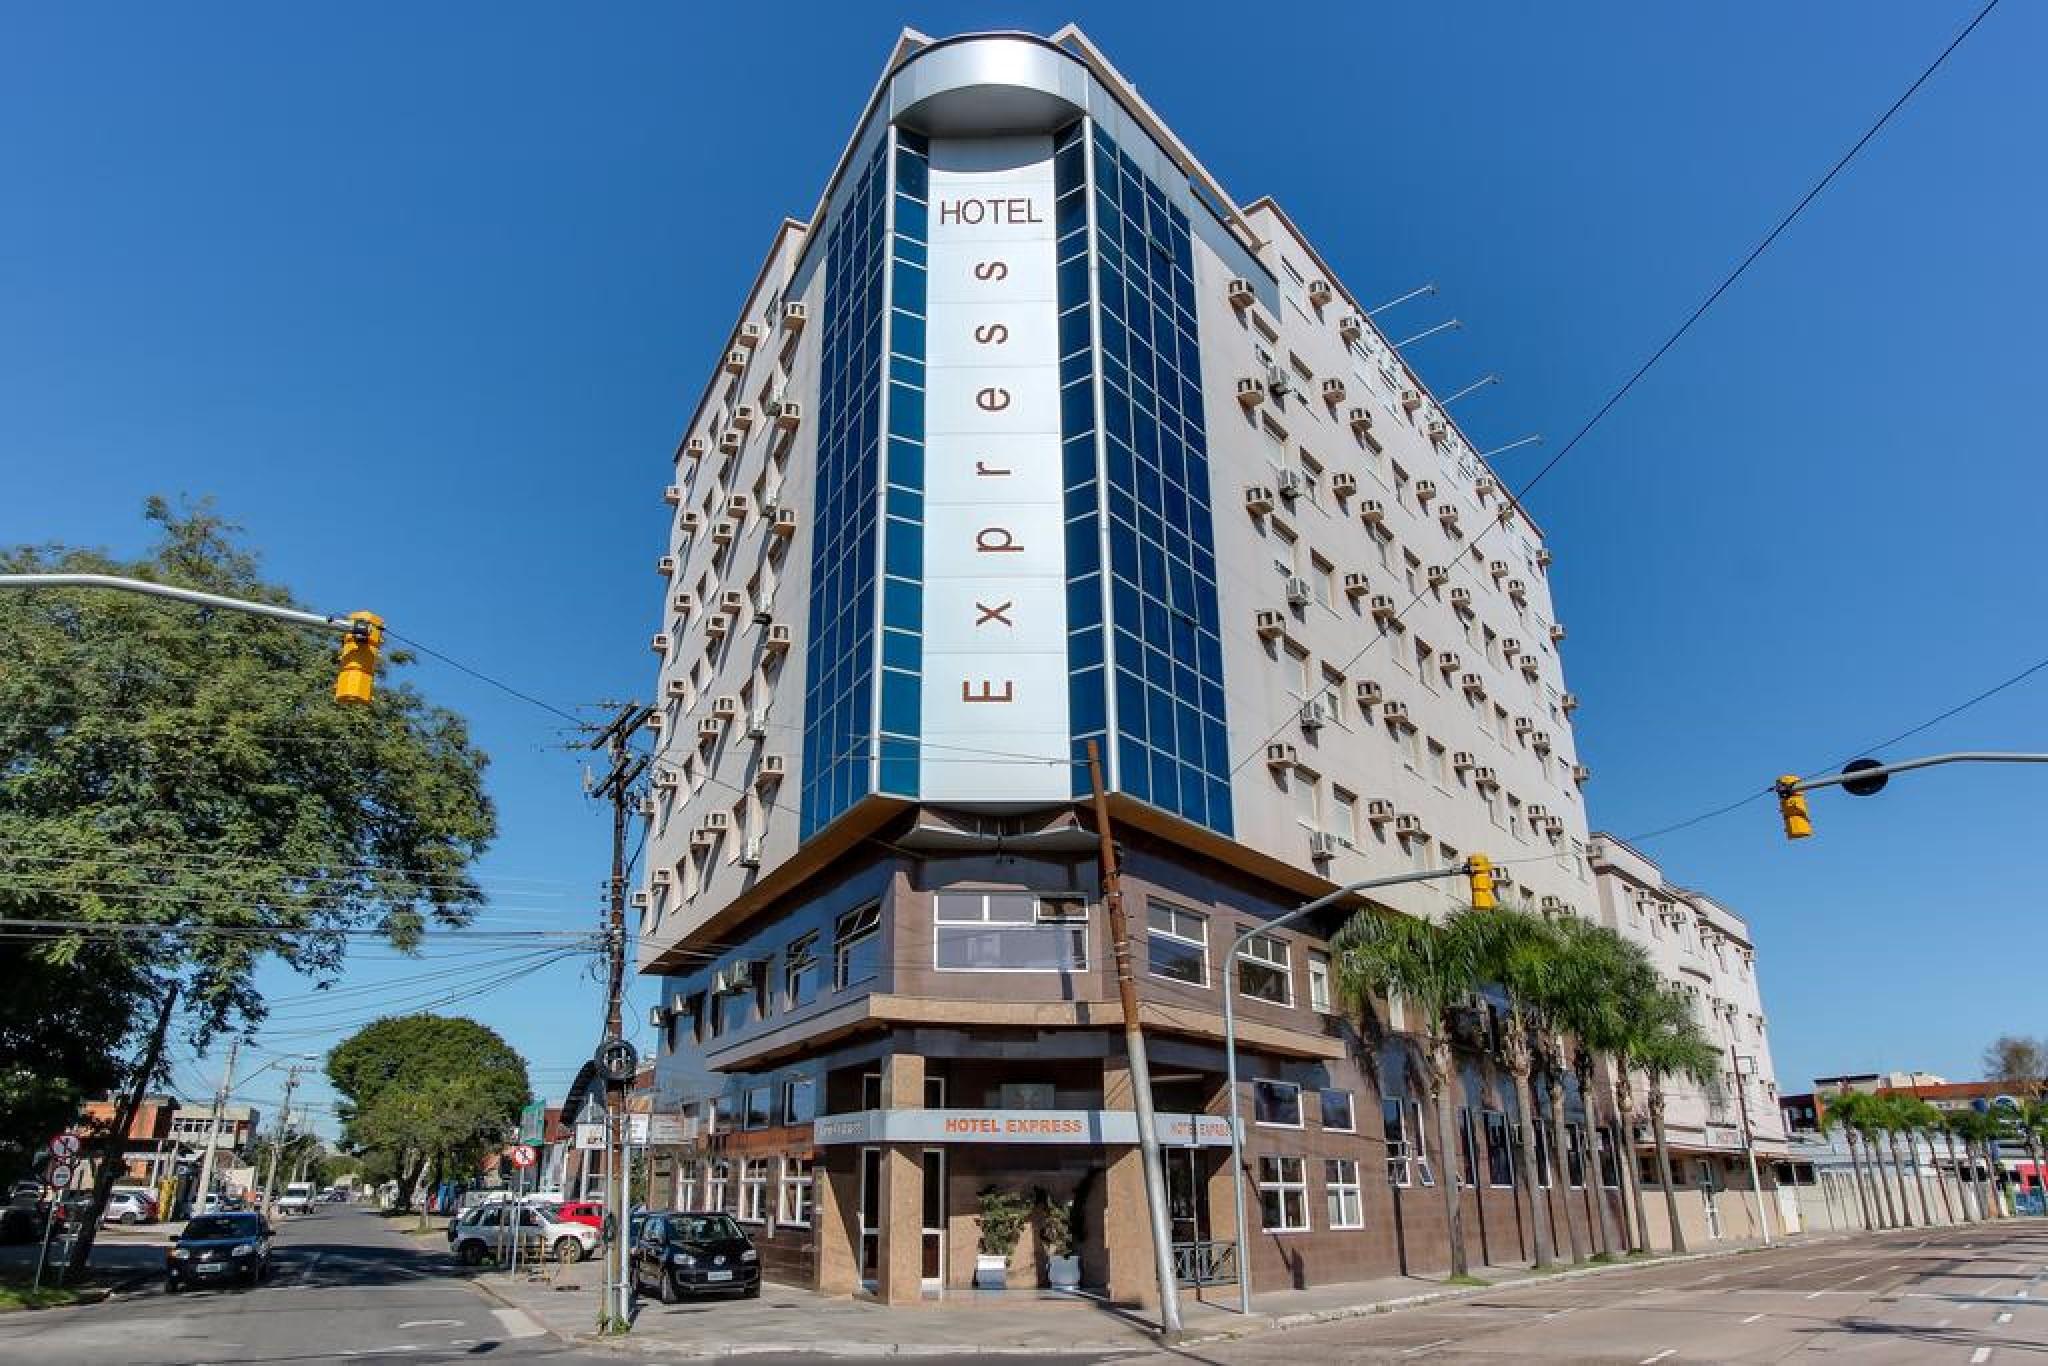 Consulado dos EUA em Porto Alegre só sai em 2015